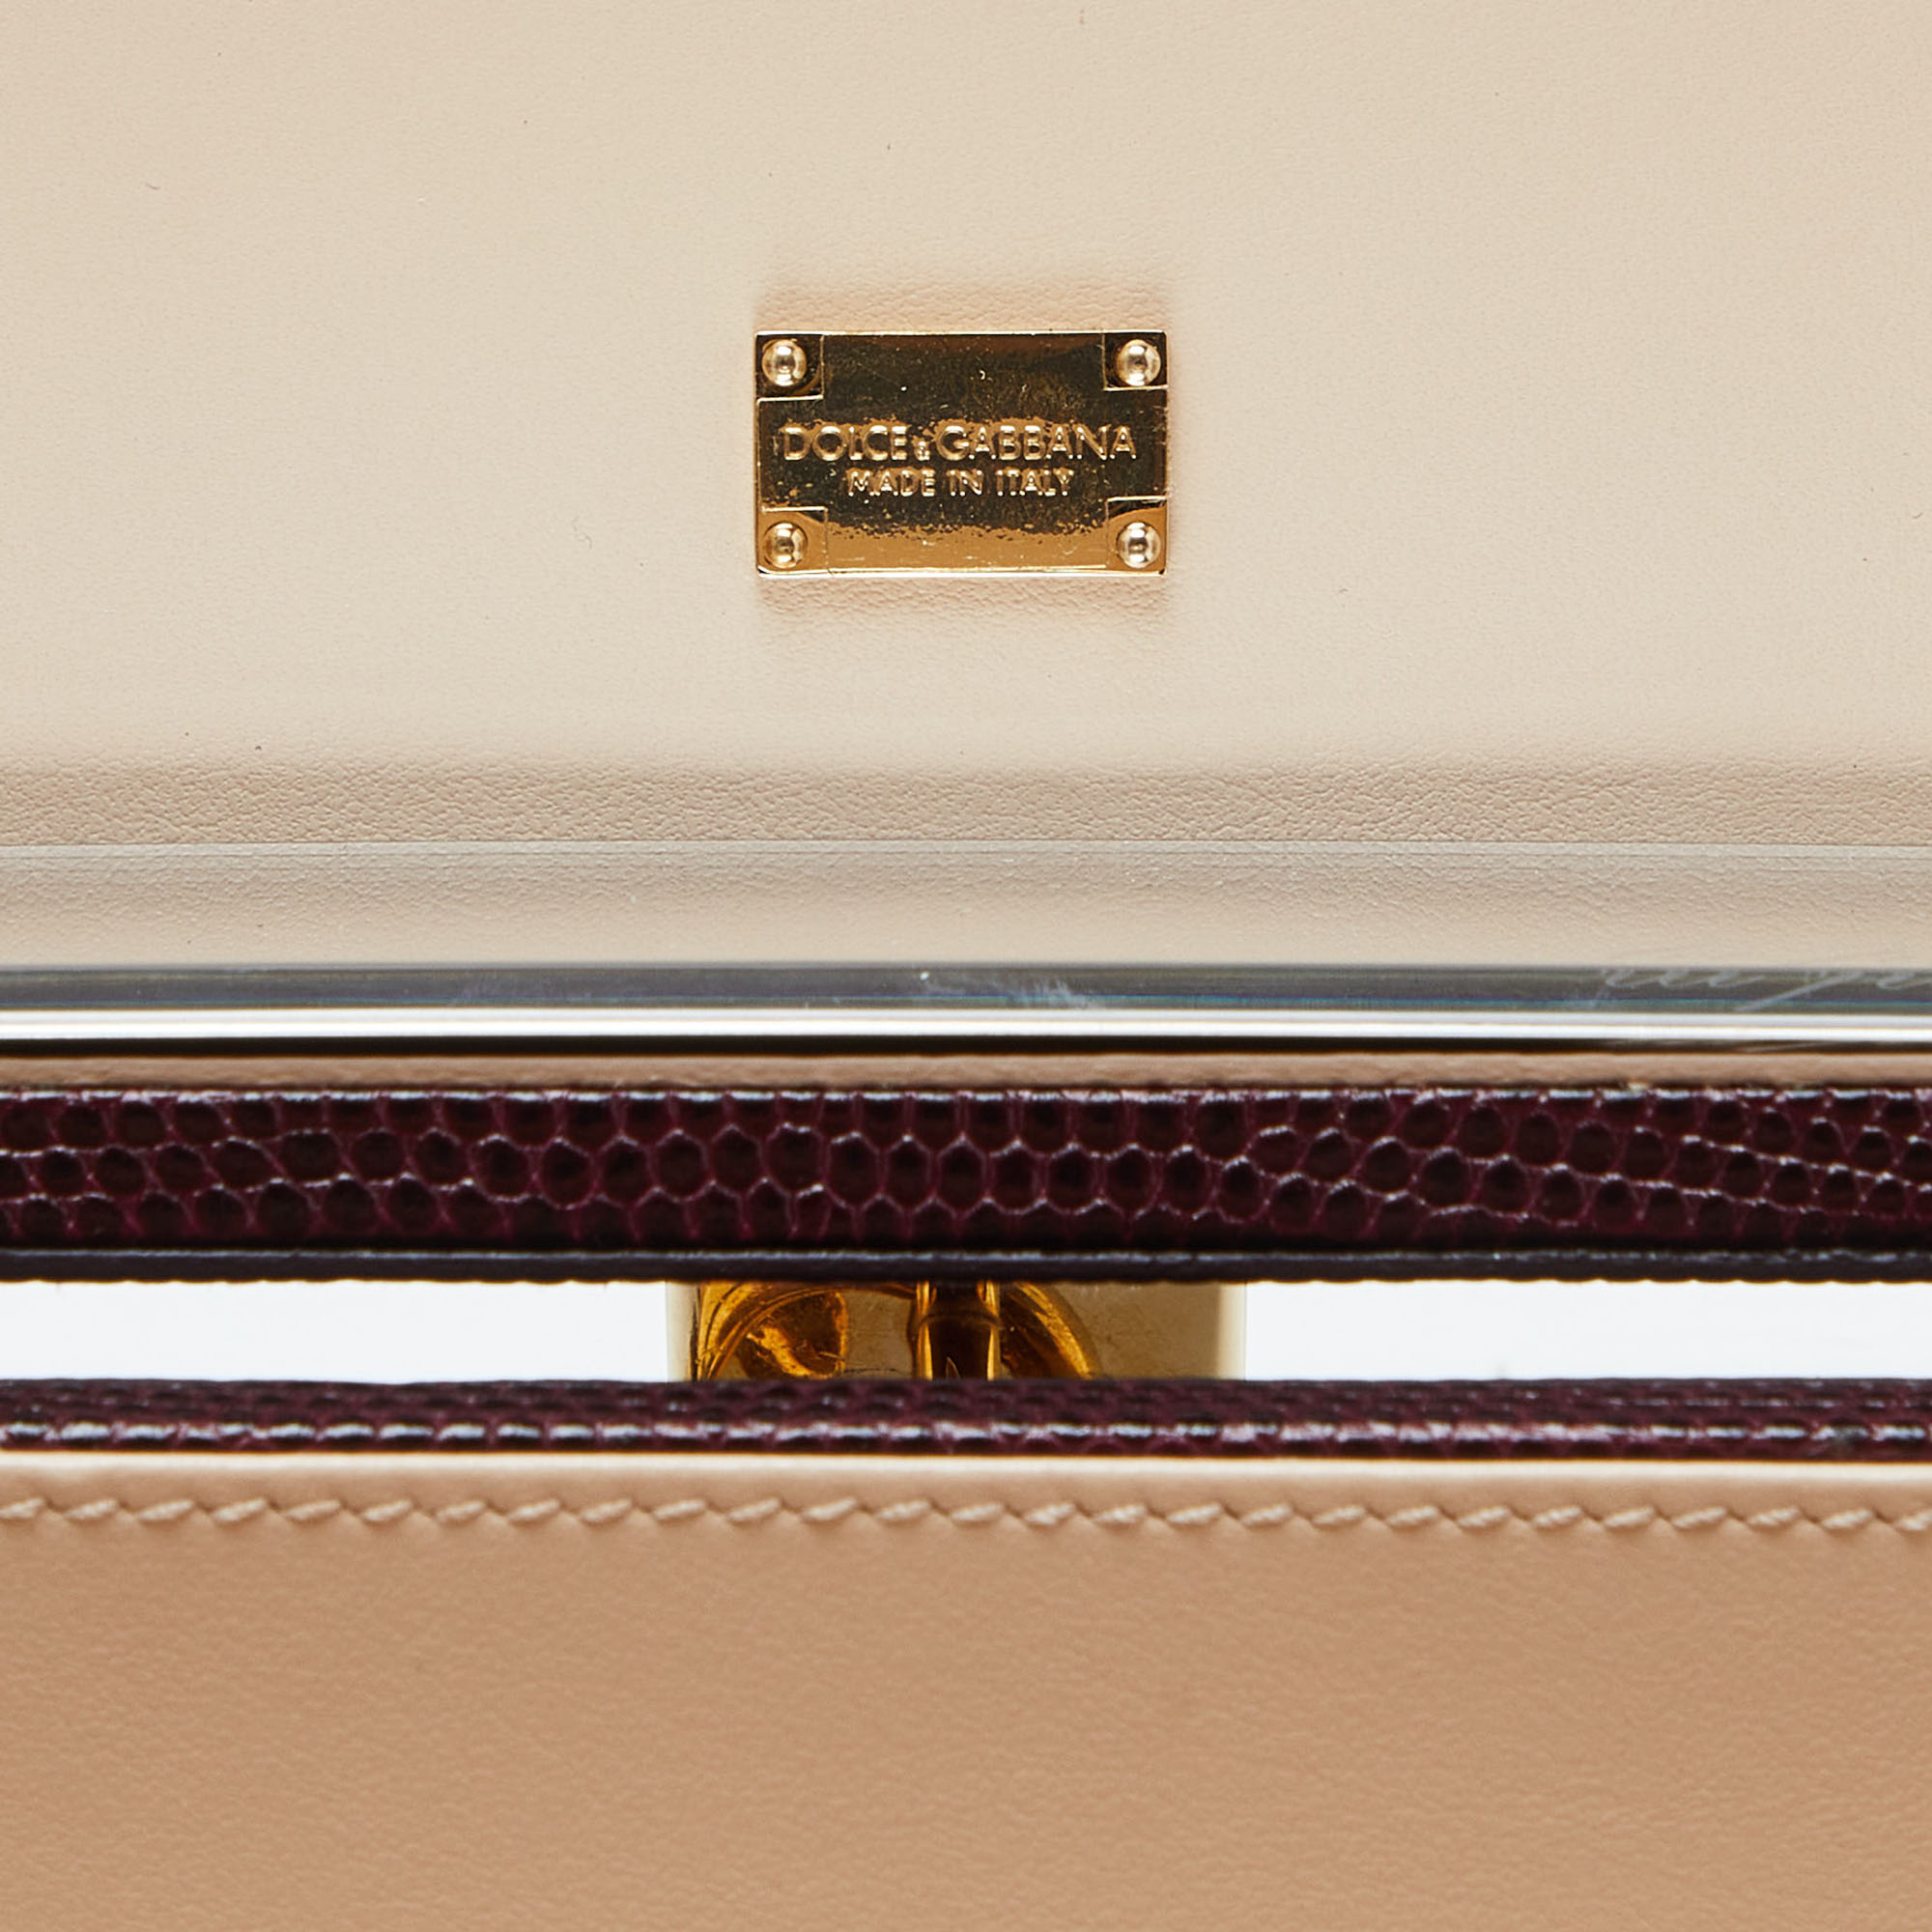 Dolce & Gabbana Burgundy Iguana Embossed Leather Box Bag